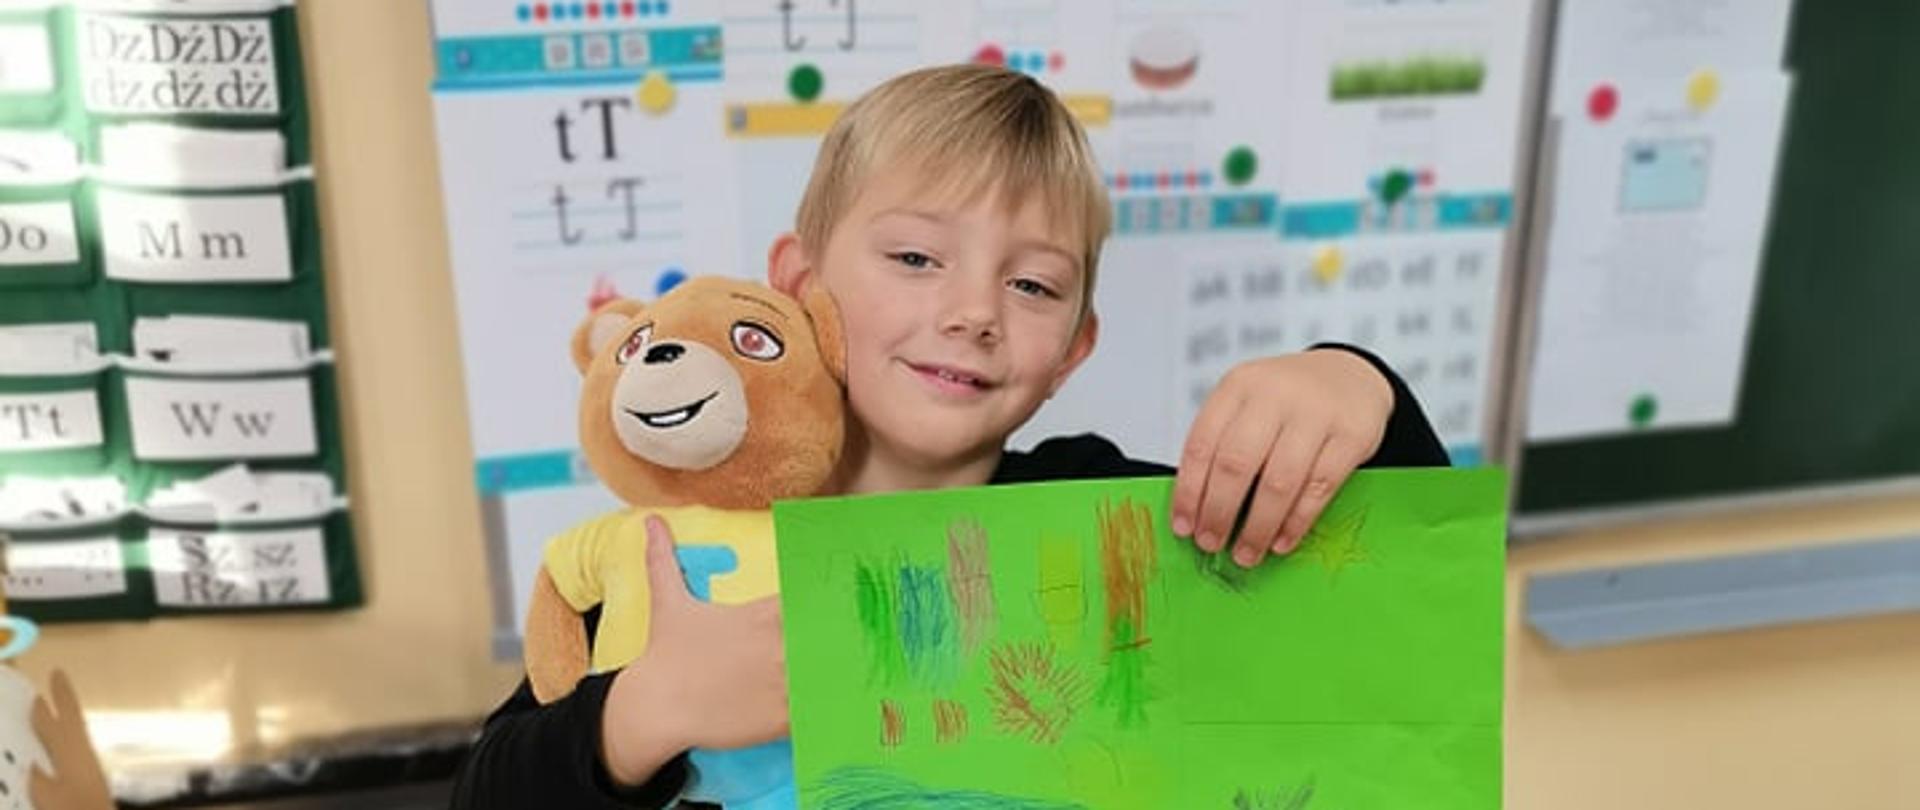 Chłopiec trzyma w prawej ręce pluszowego misia a w lewej zieloną kartkę z rysunkiem